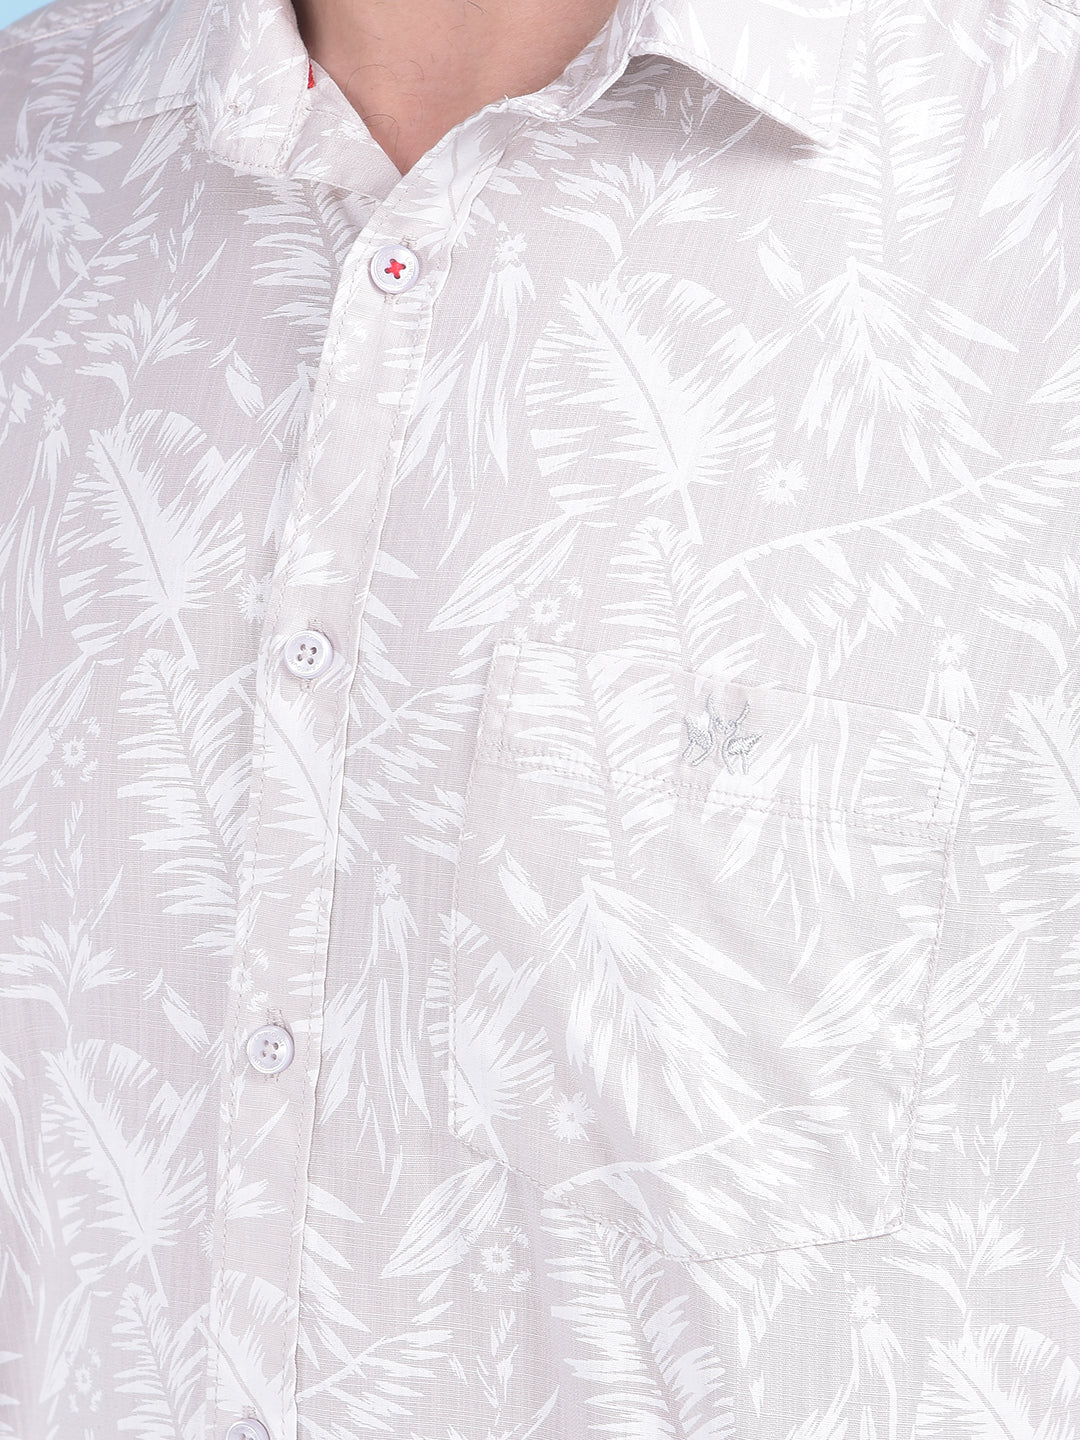 Beige Floral Print 100% Cotton Shirt-Men Shirts-Crimsoune Club